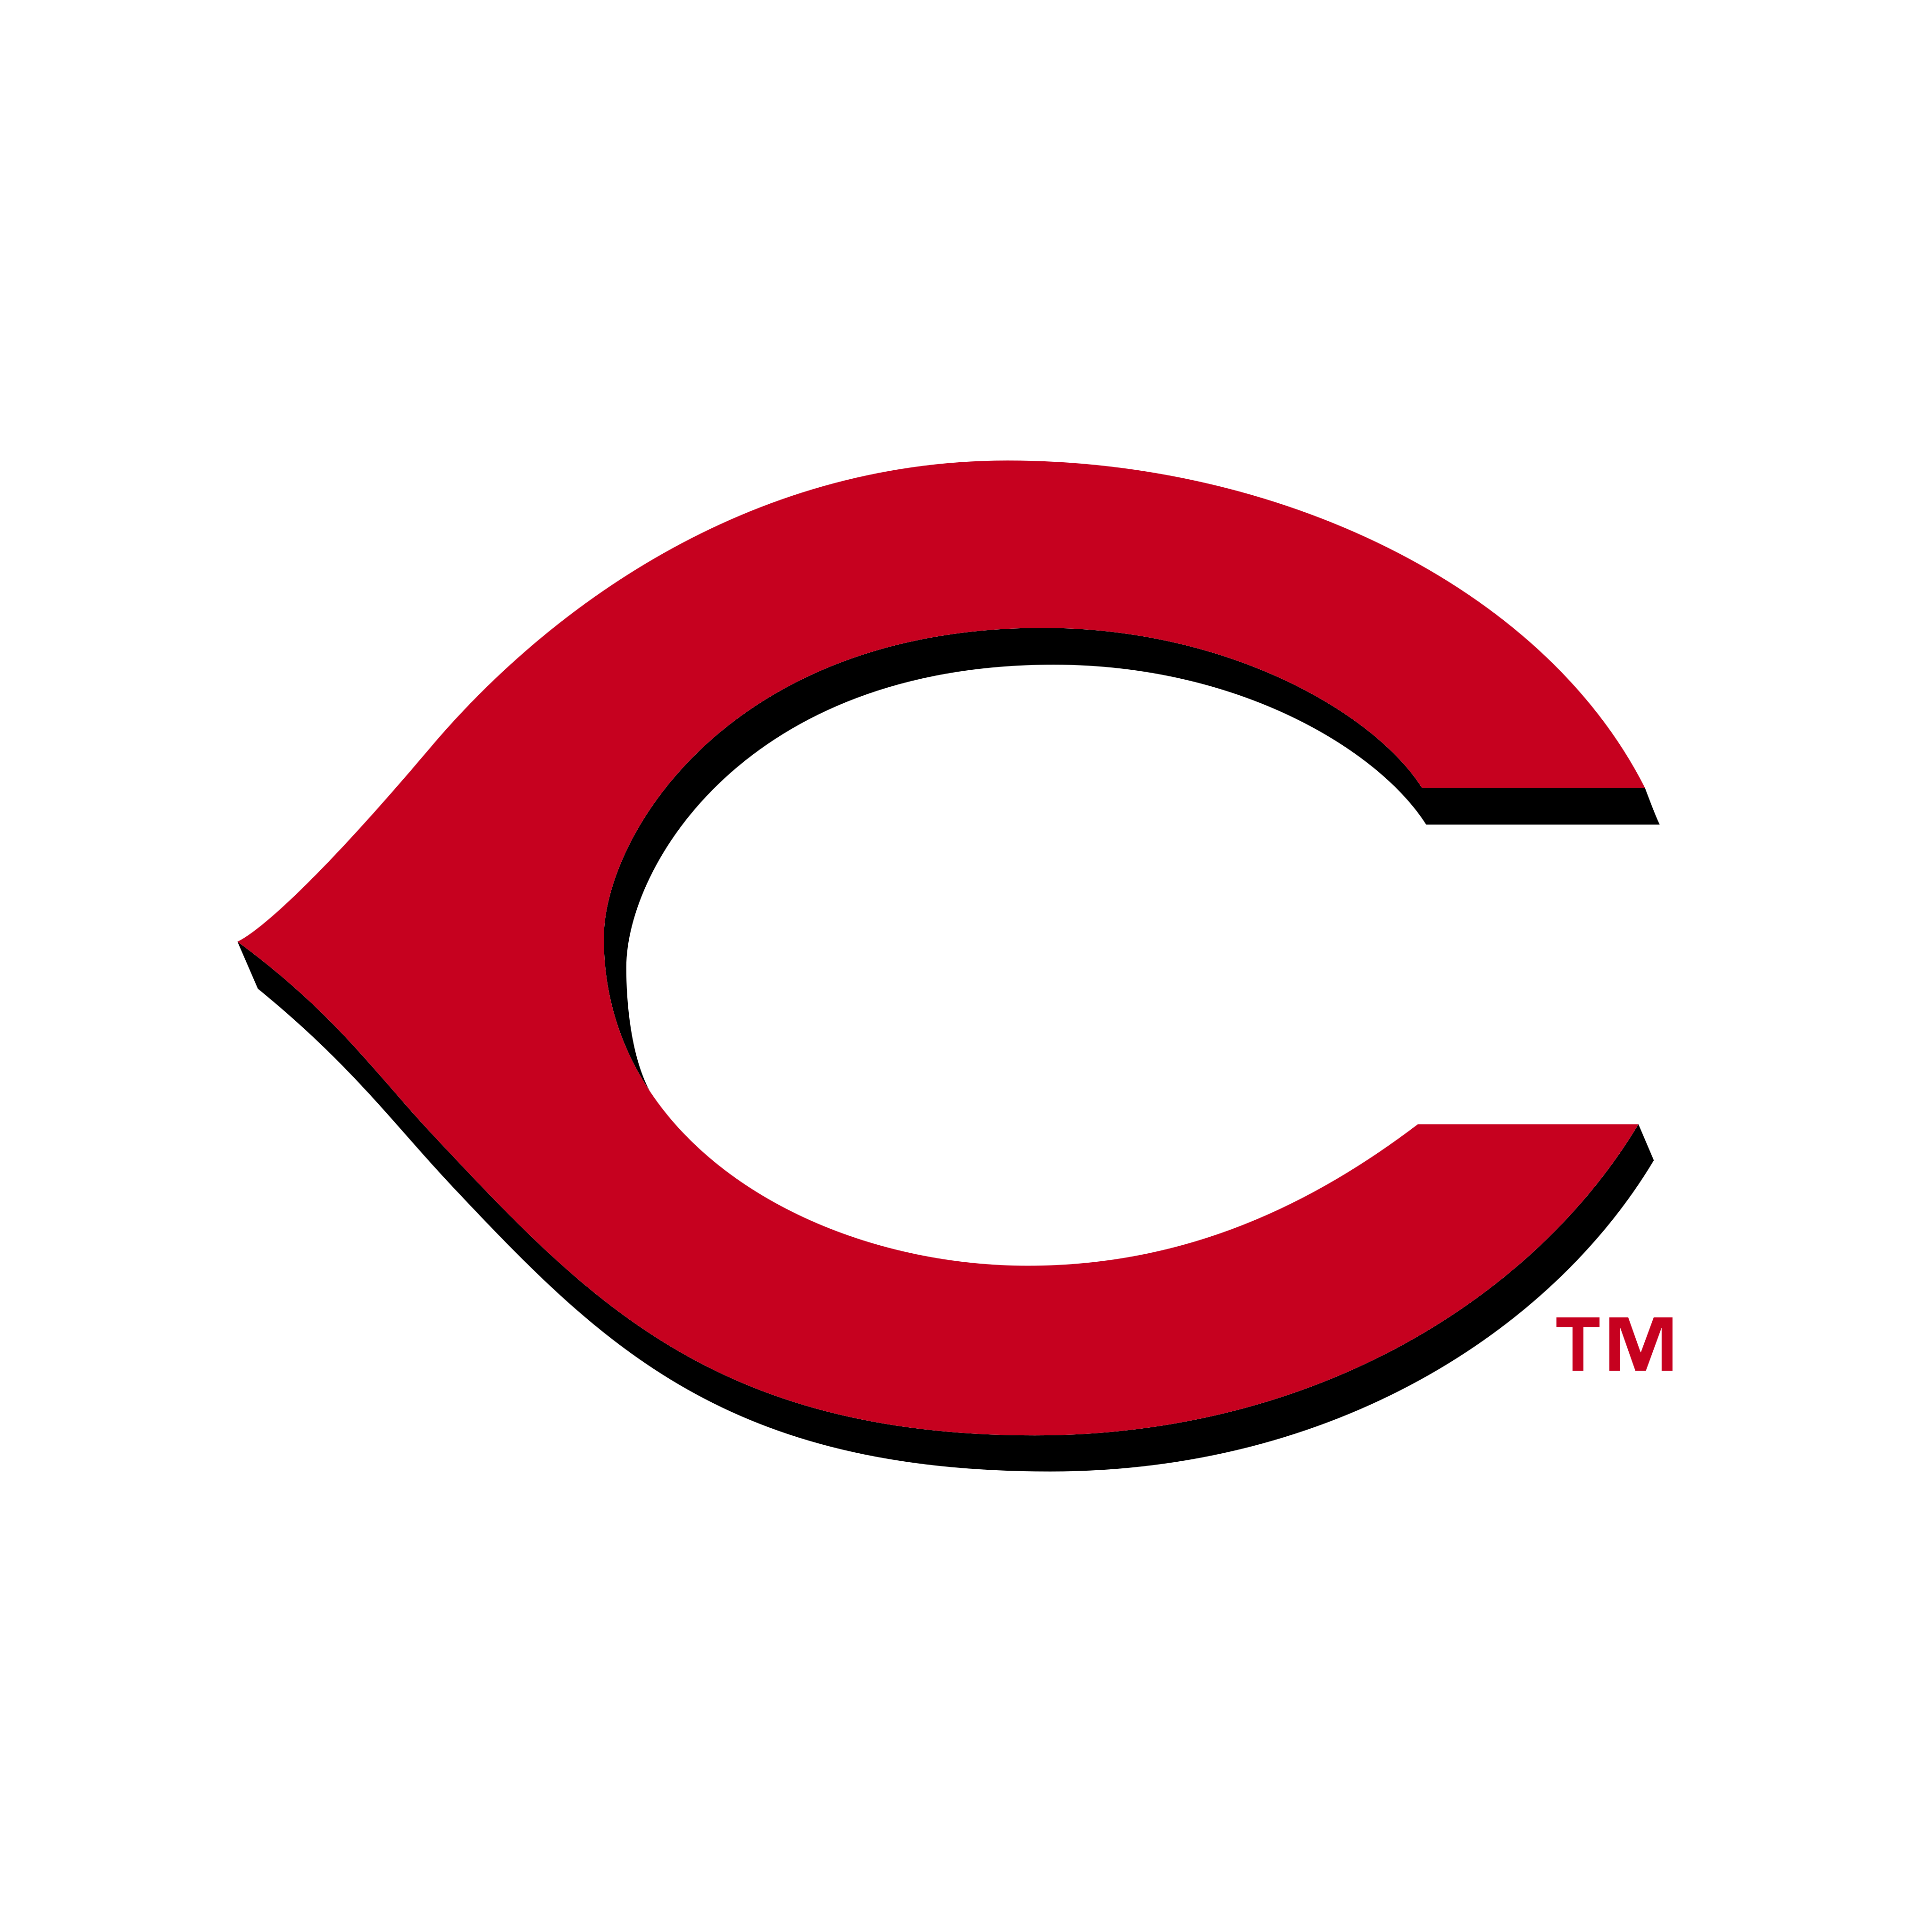 cincinnati reds logo 0 - Cincinnati Reds Logo